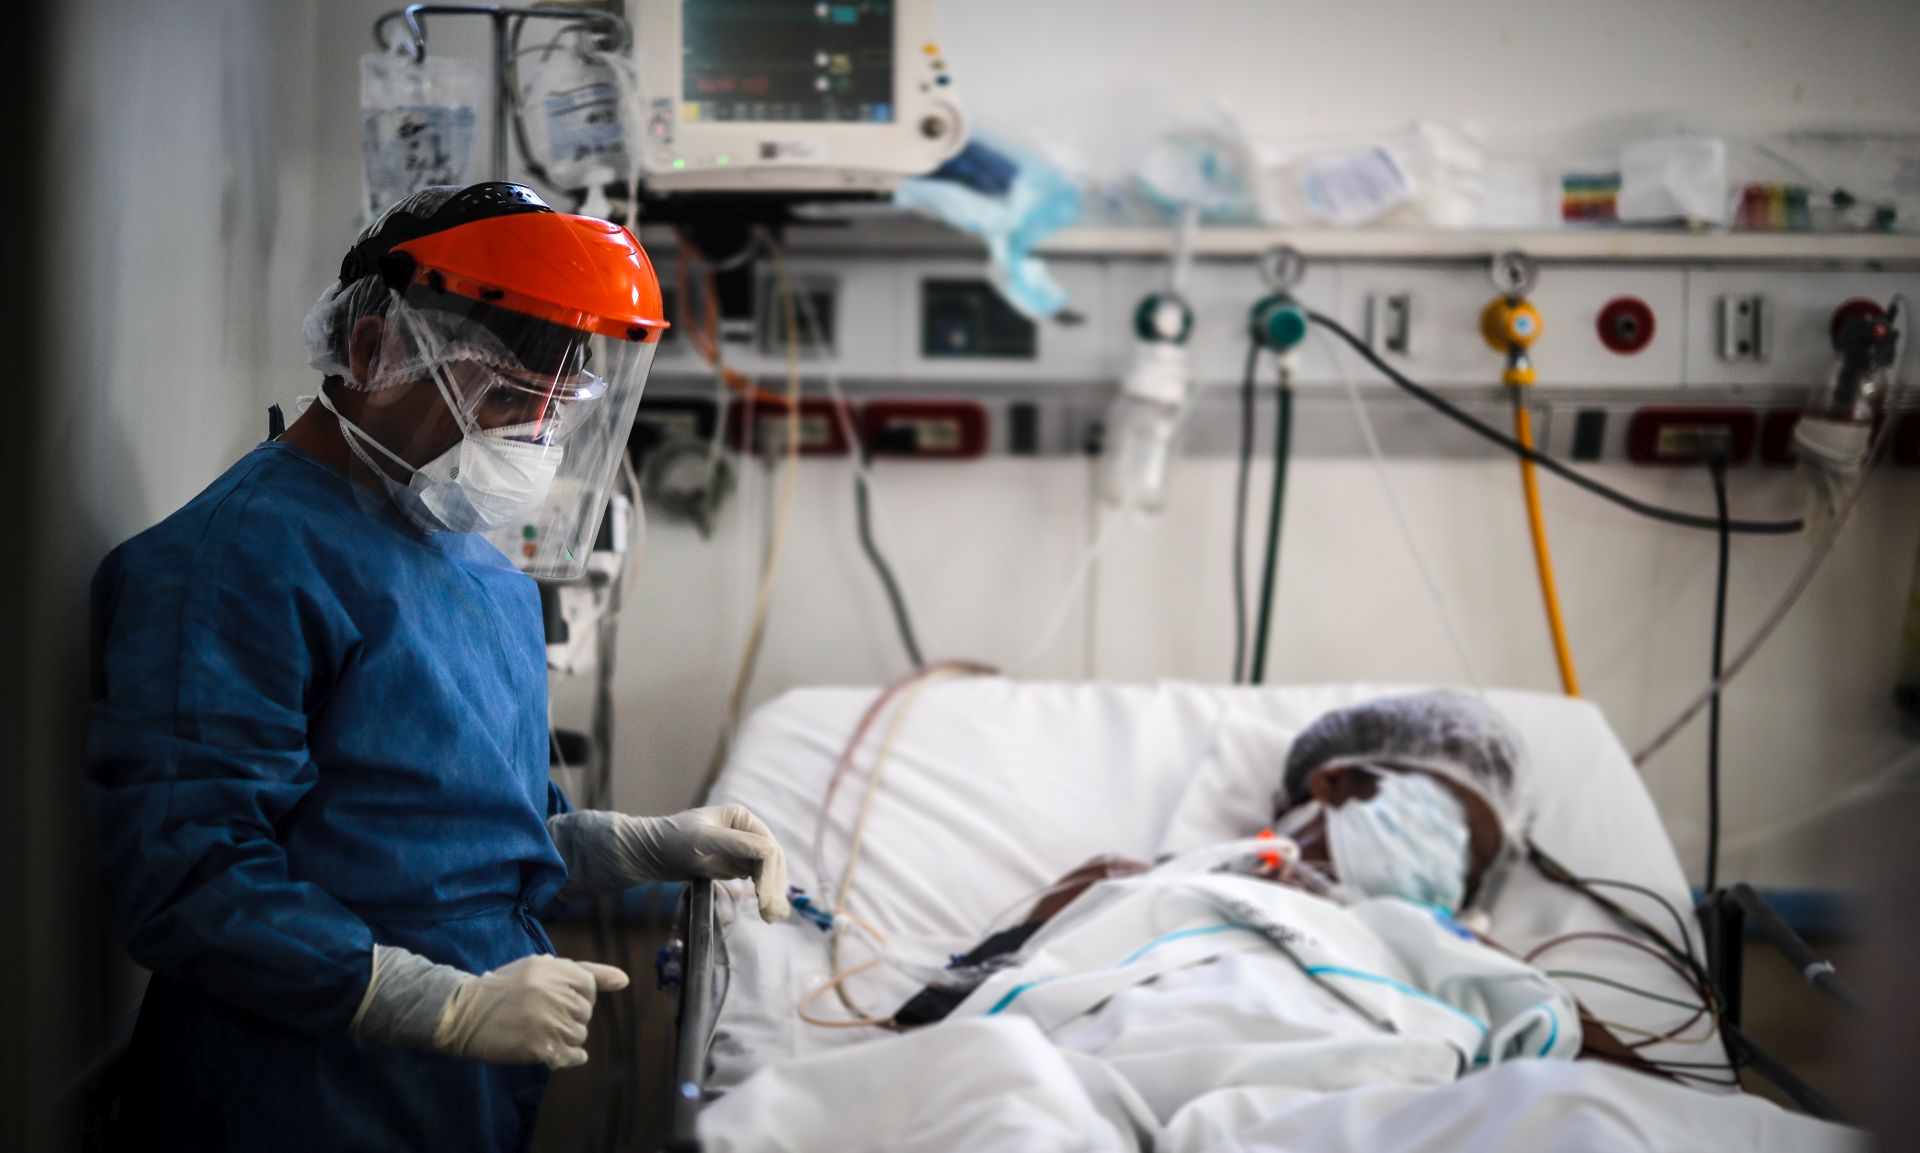 epa08575610 A doctor checks on a patient with COVID-19 at El Cruce de Florencio Varela Hospital in Buenos Aires, Argentina, 30 July 2020.  EPA/JUAN IGNACIO RONCORONI